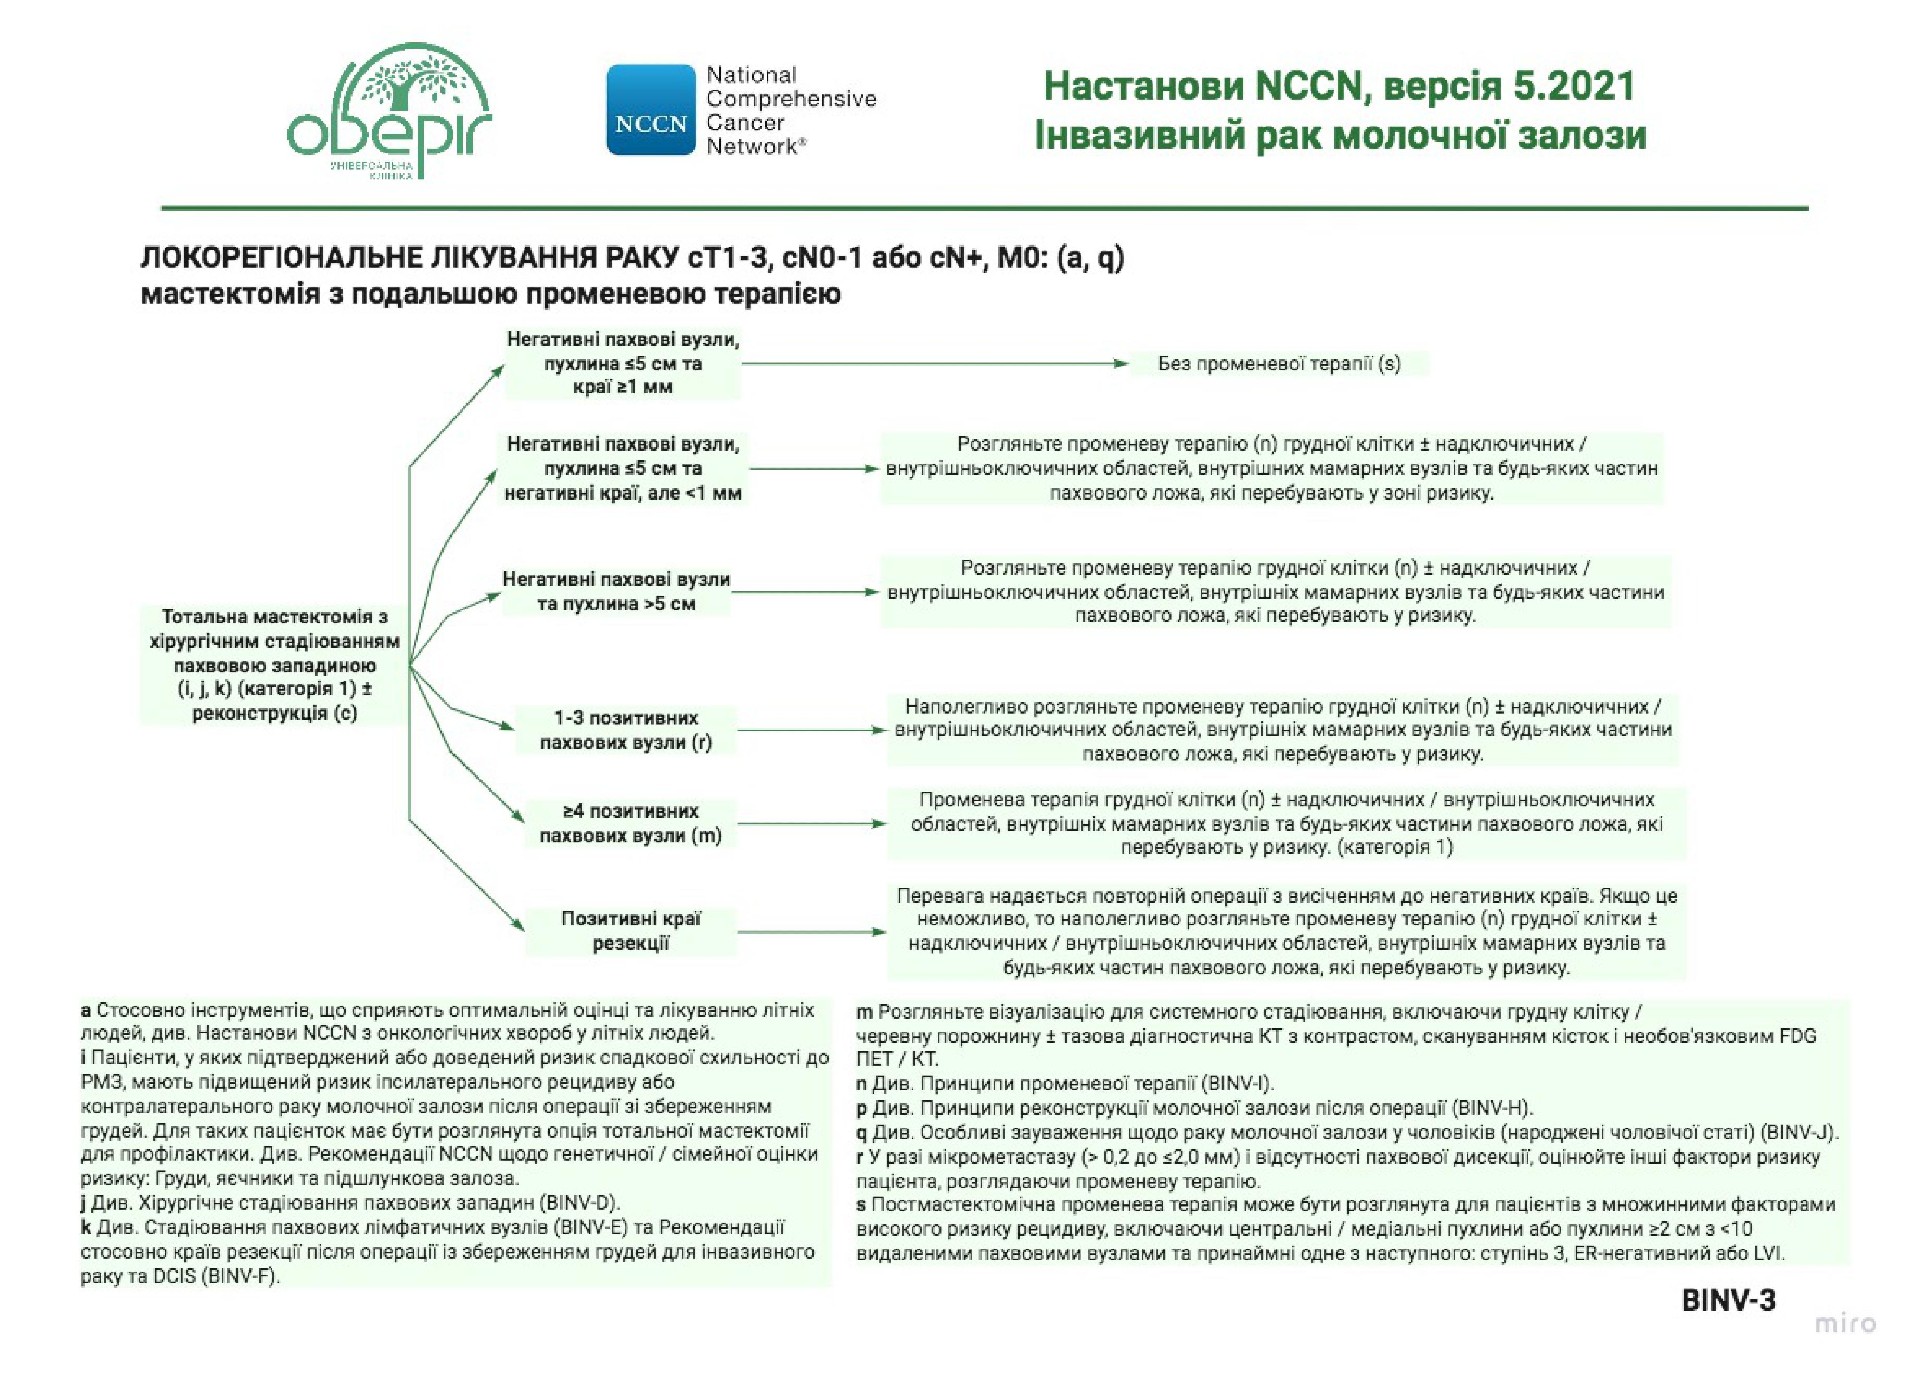 Рекомендации NCCN относительно лечения рака молочной железы